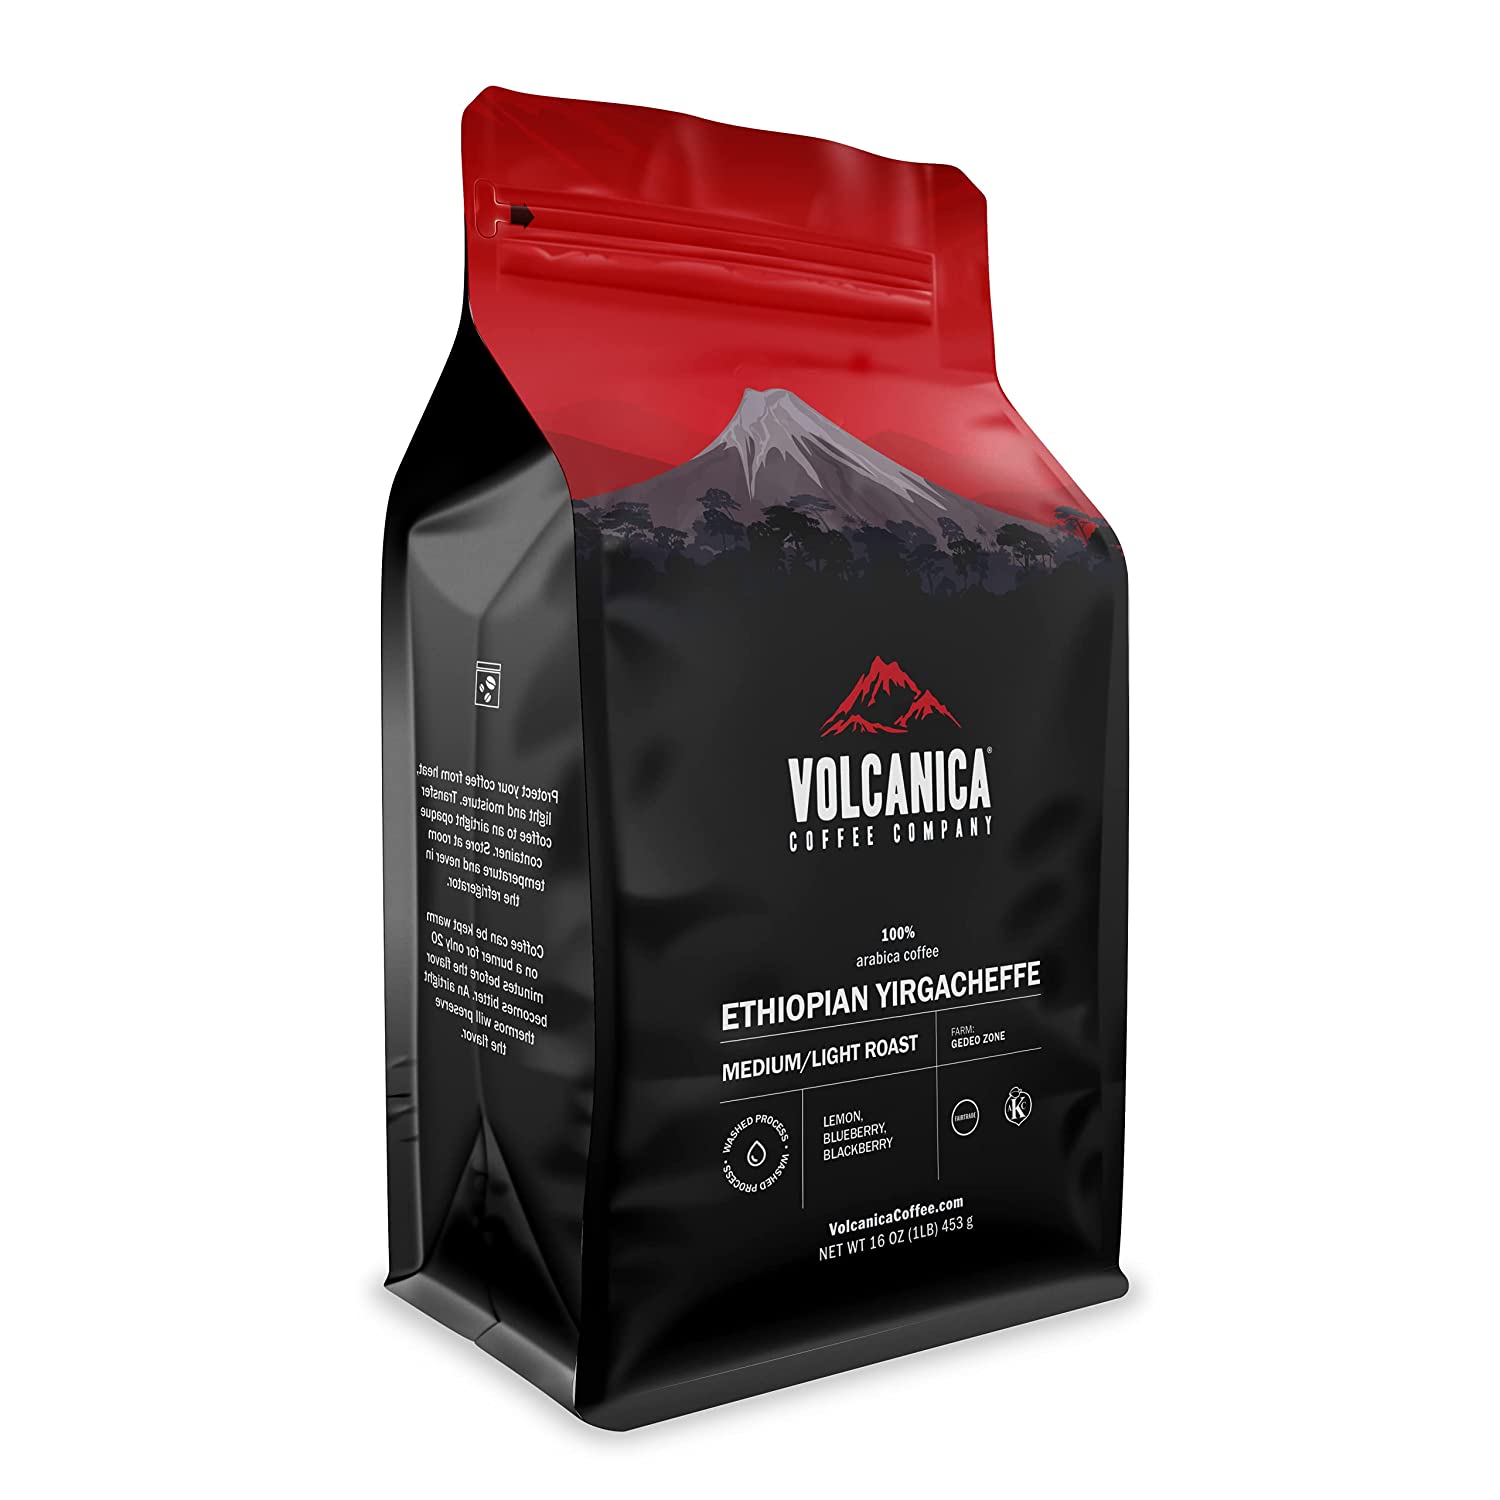 Ethiopian-Yirgacheffe-Volcanica-Coffee